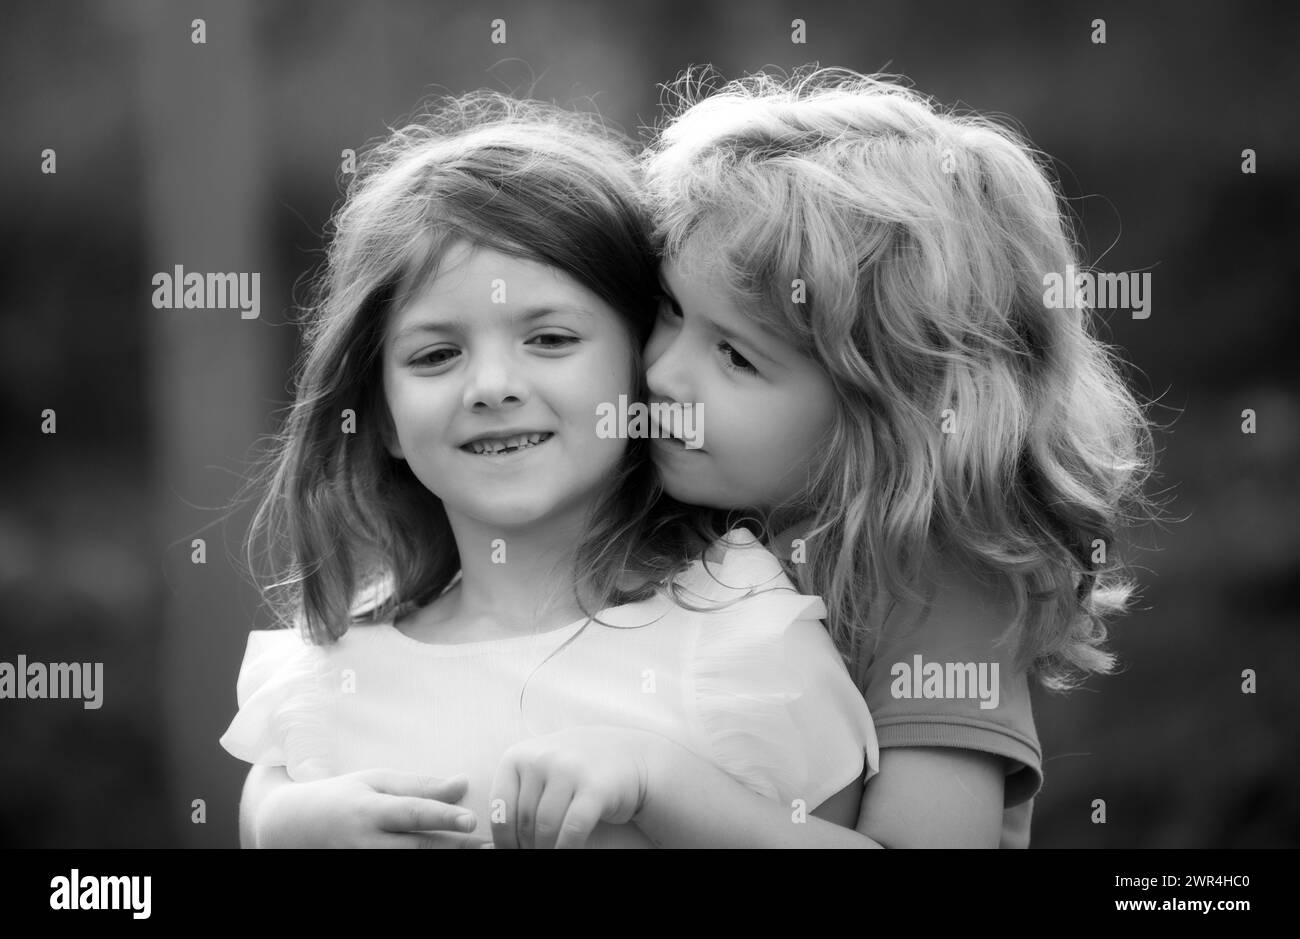 Zwei kleine Kinder umarmen und küssen sich im Sommergarten. Kinder verlieben sich. Freundschaft und Kindheit. Stockfoto